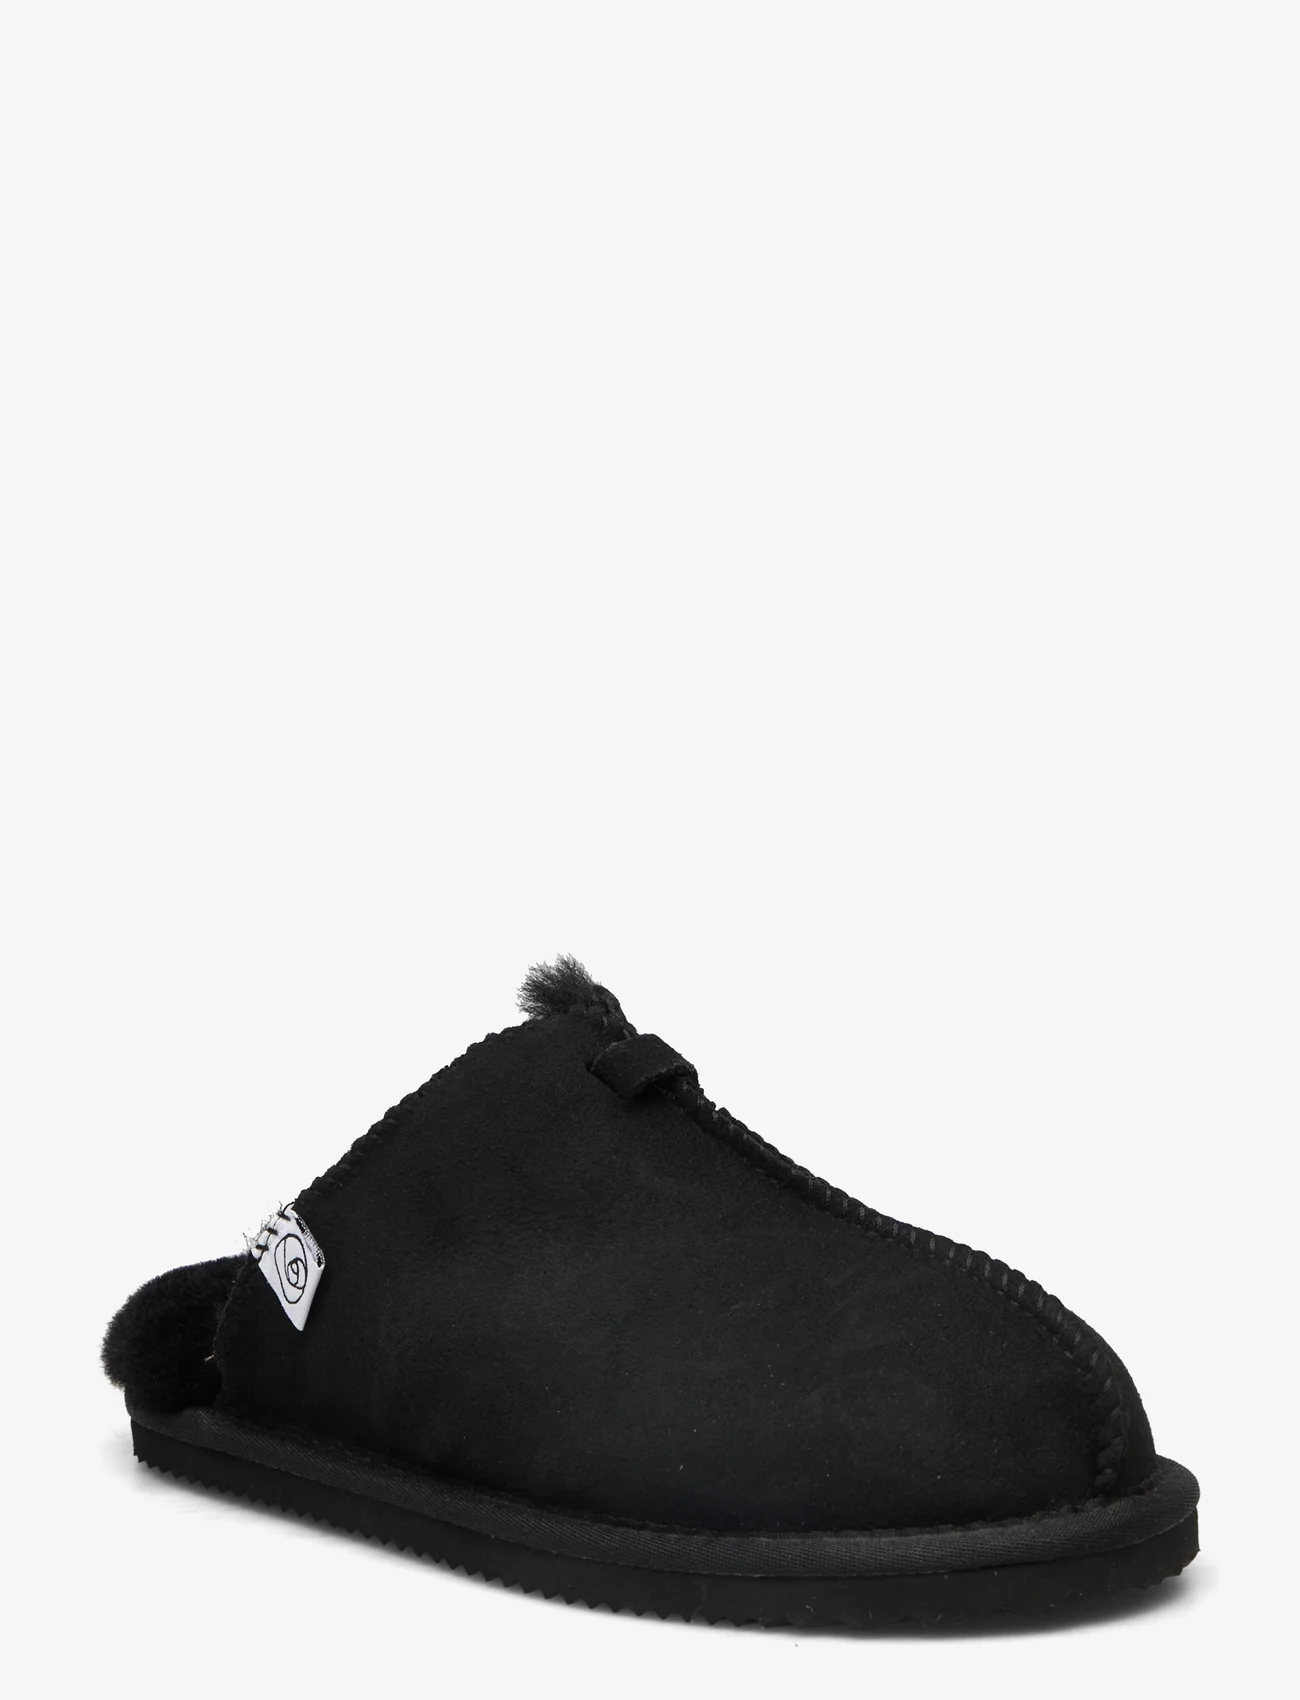 Rosemunde - Shearling slippers - födelsedagspresenter - black - 0